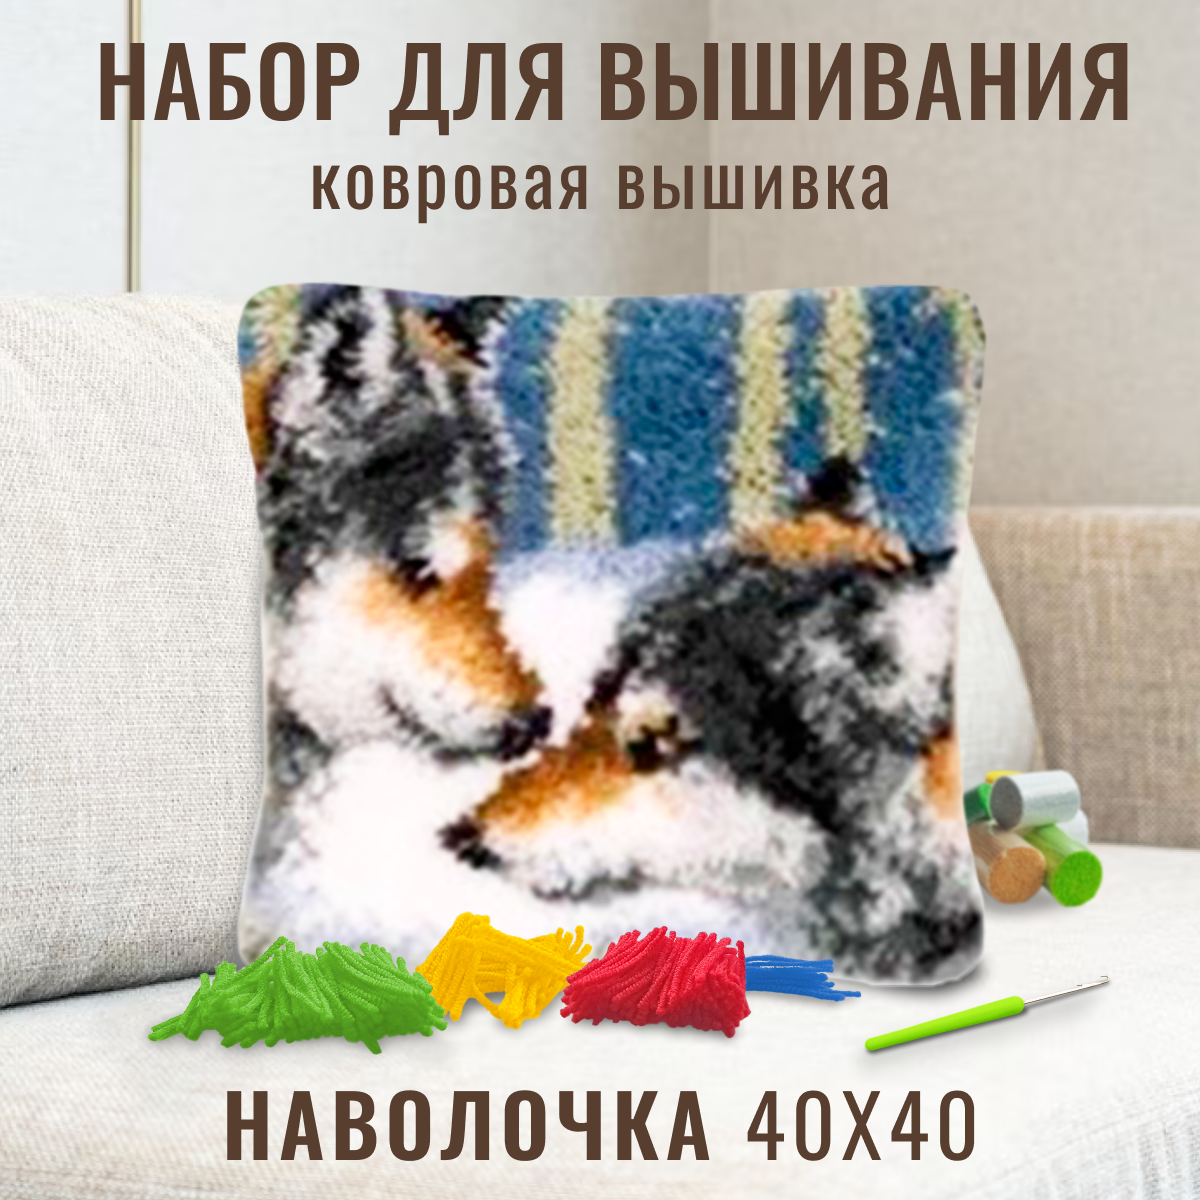 Ковровая вышивка набор для вышивания подушки размером 40х40 см ZD-1023 Волк и волчица